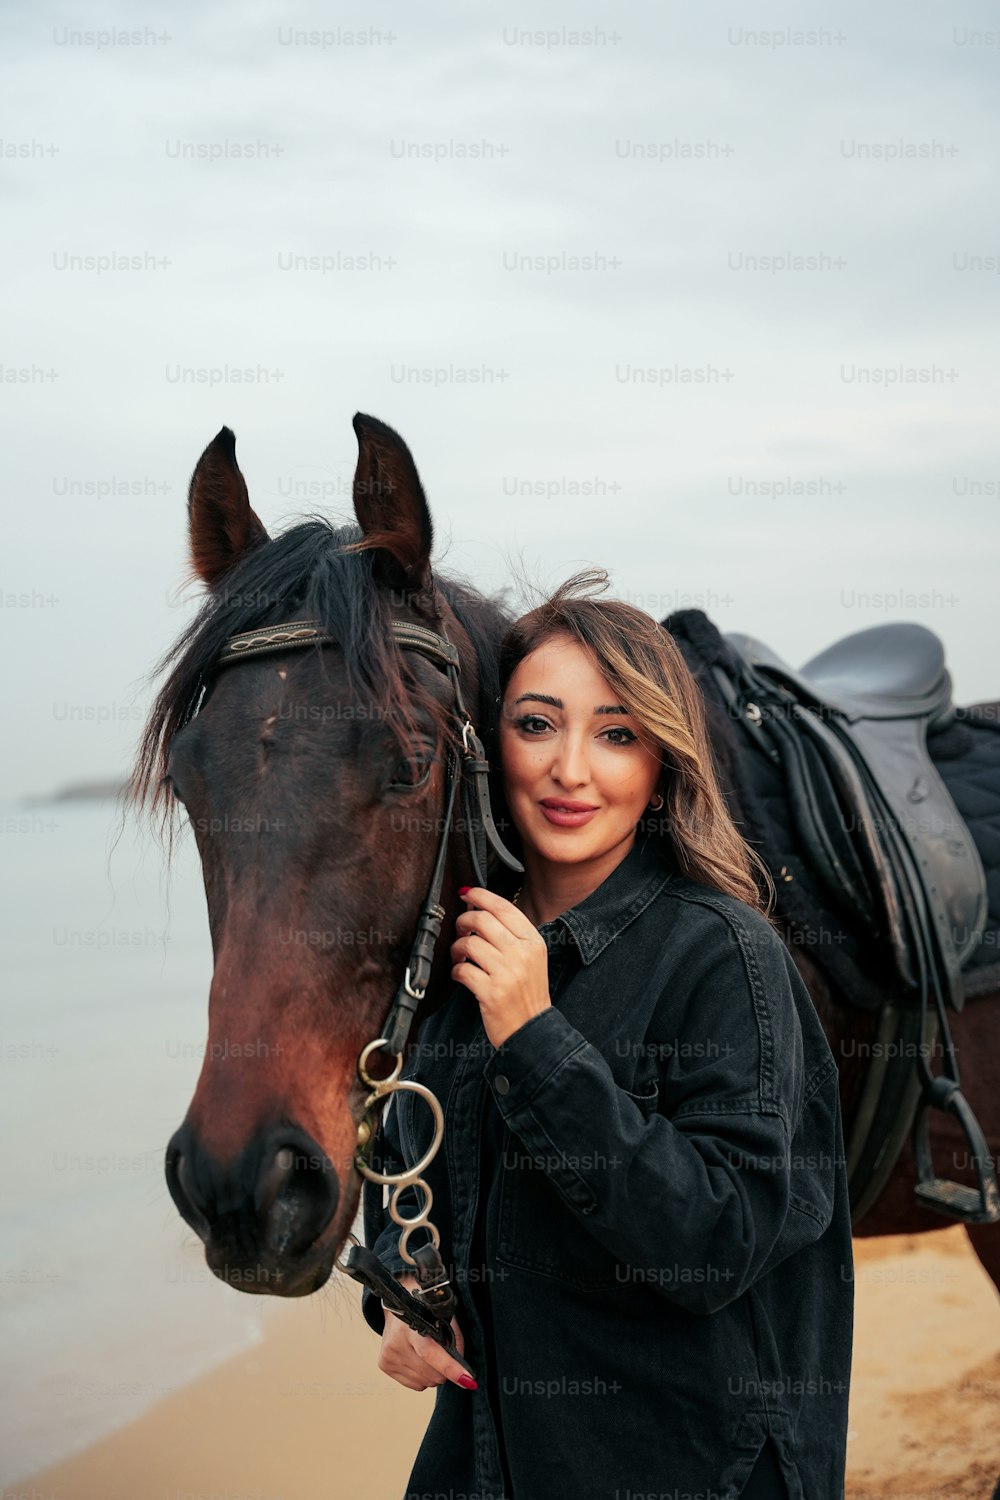 Una mujer parada junto a un caballo en una playa